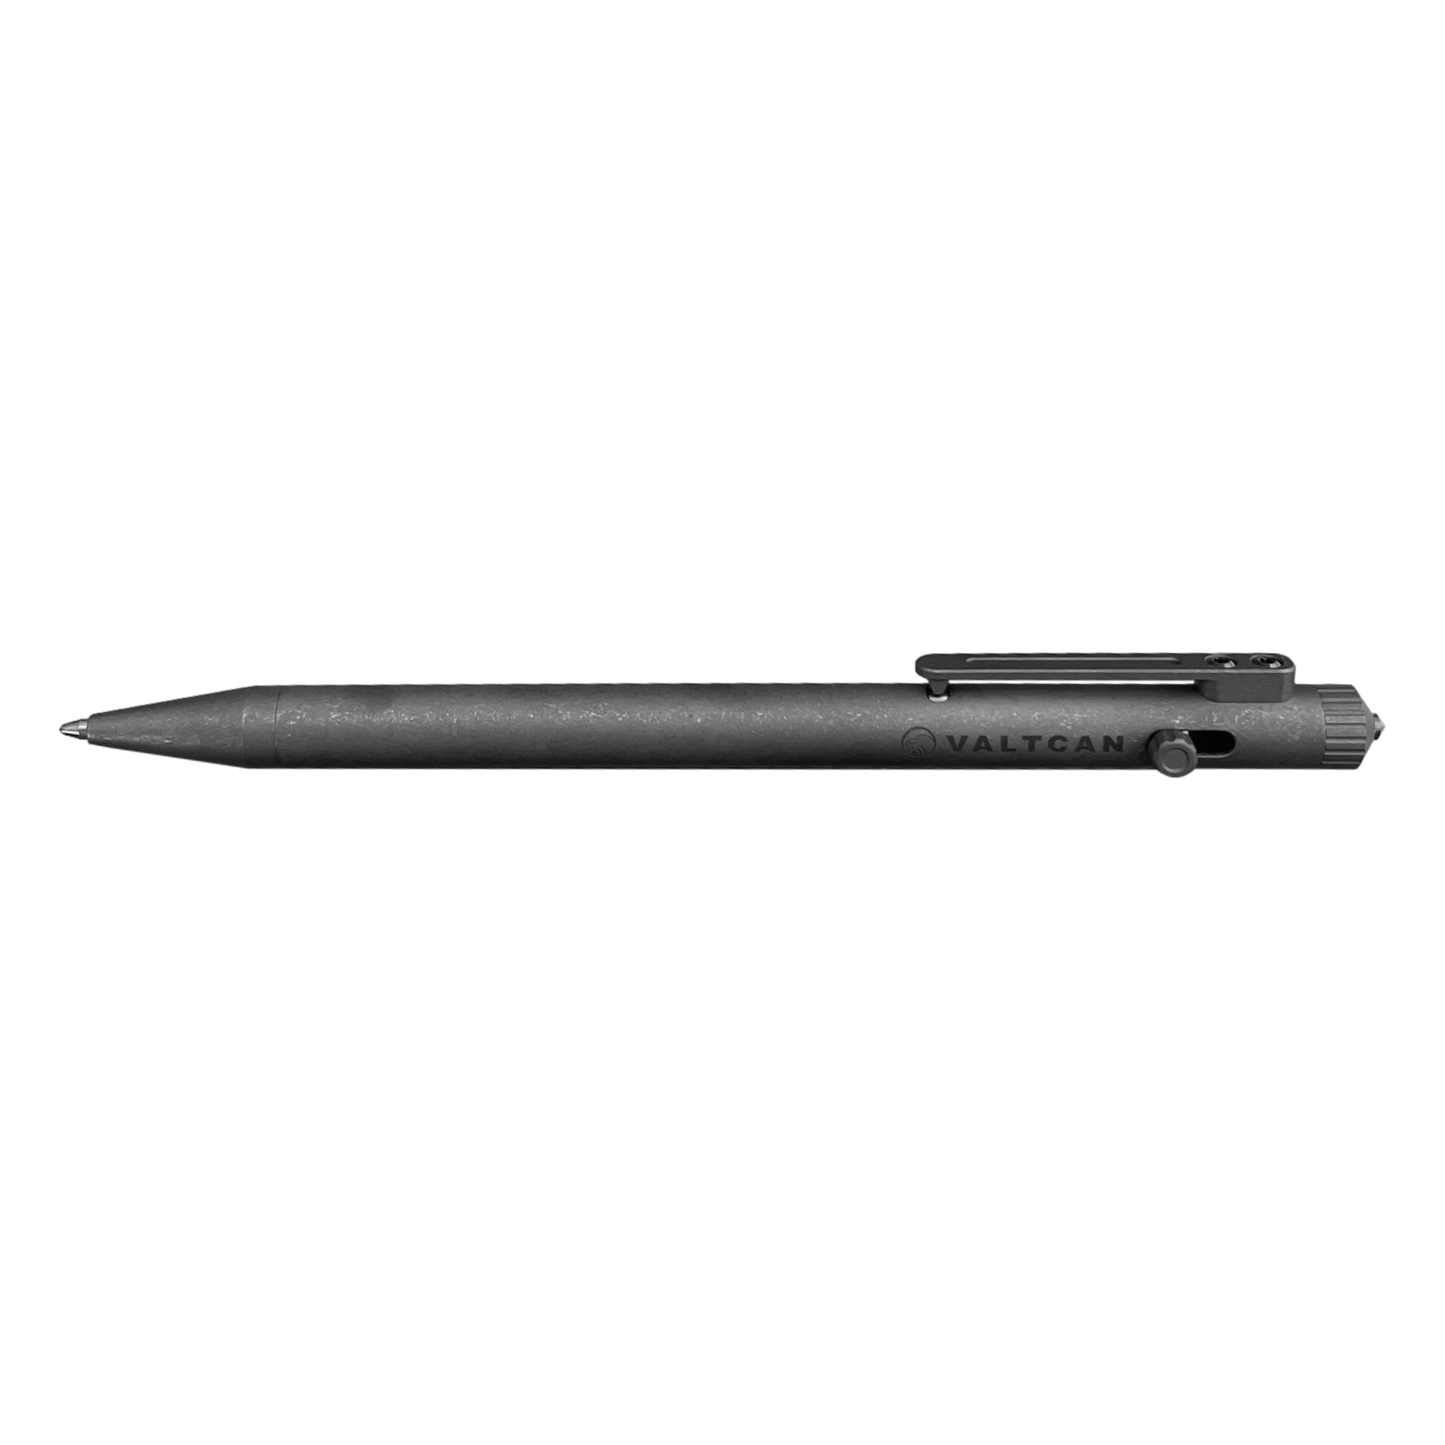 Valtcan Eclipse Titanium Pen EDC Writer Slim Design Matte Black